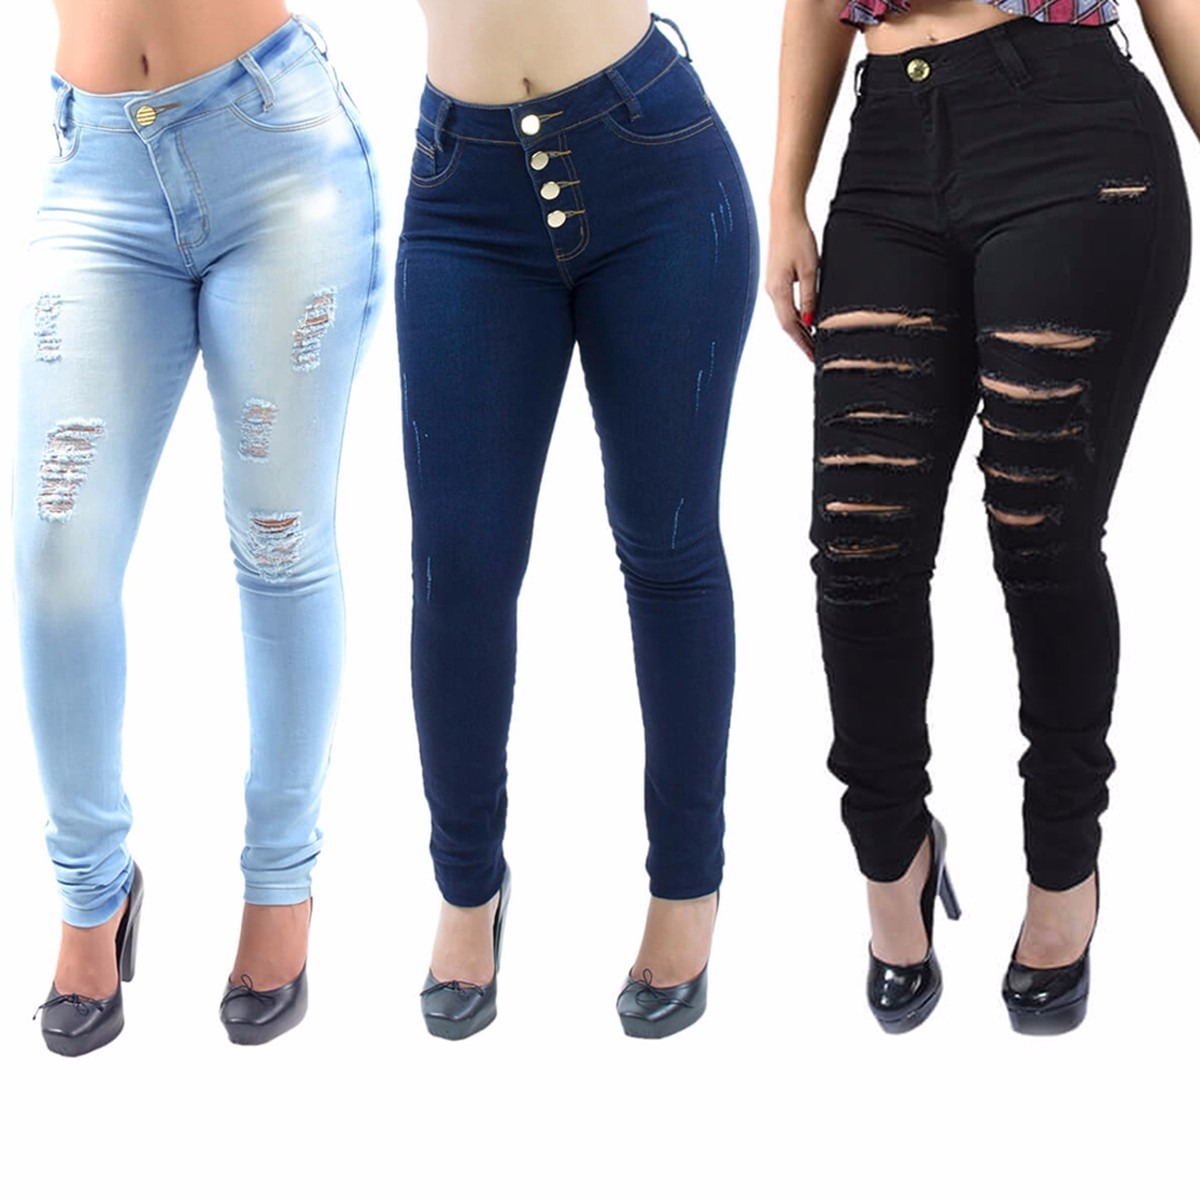 Kit De 3 Calças Jeans Feminina Cintura Alta Levanta Bumbum R 187 90